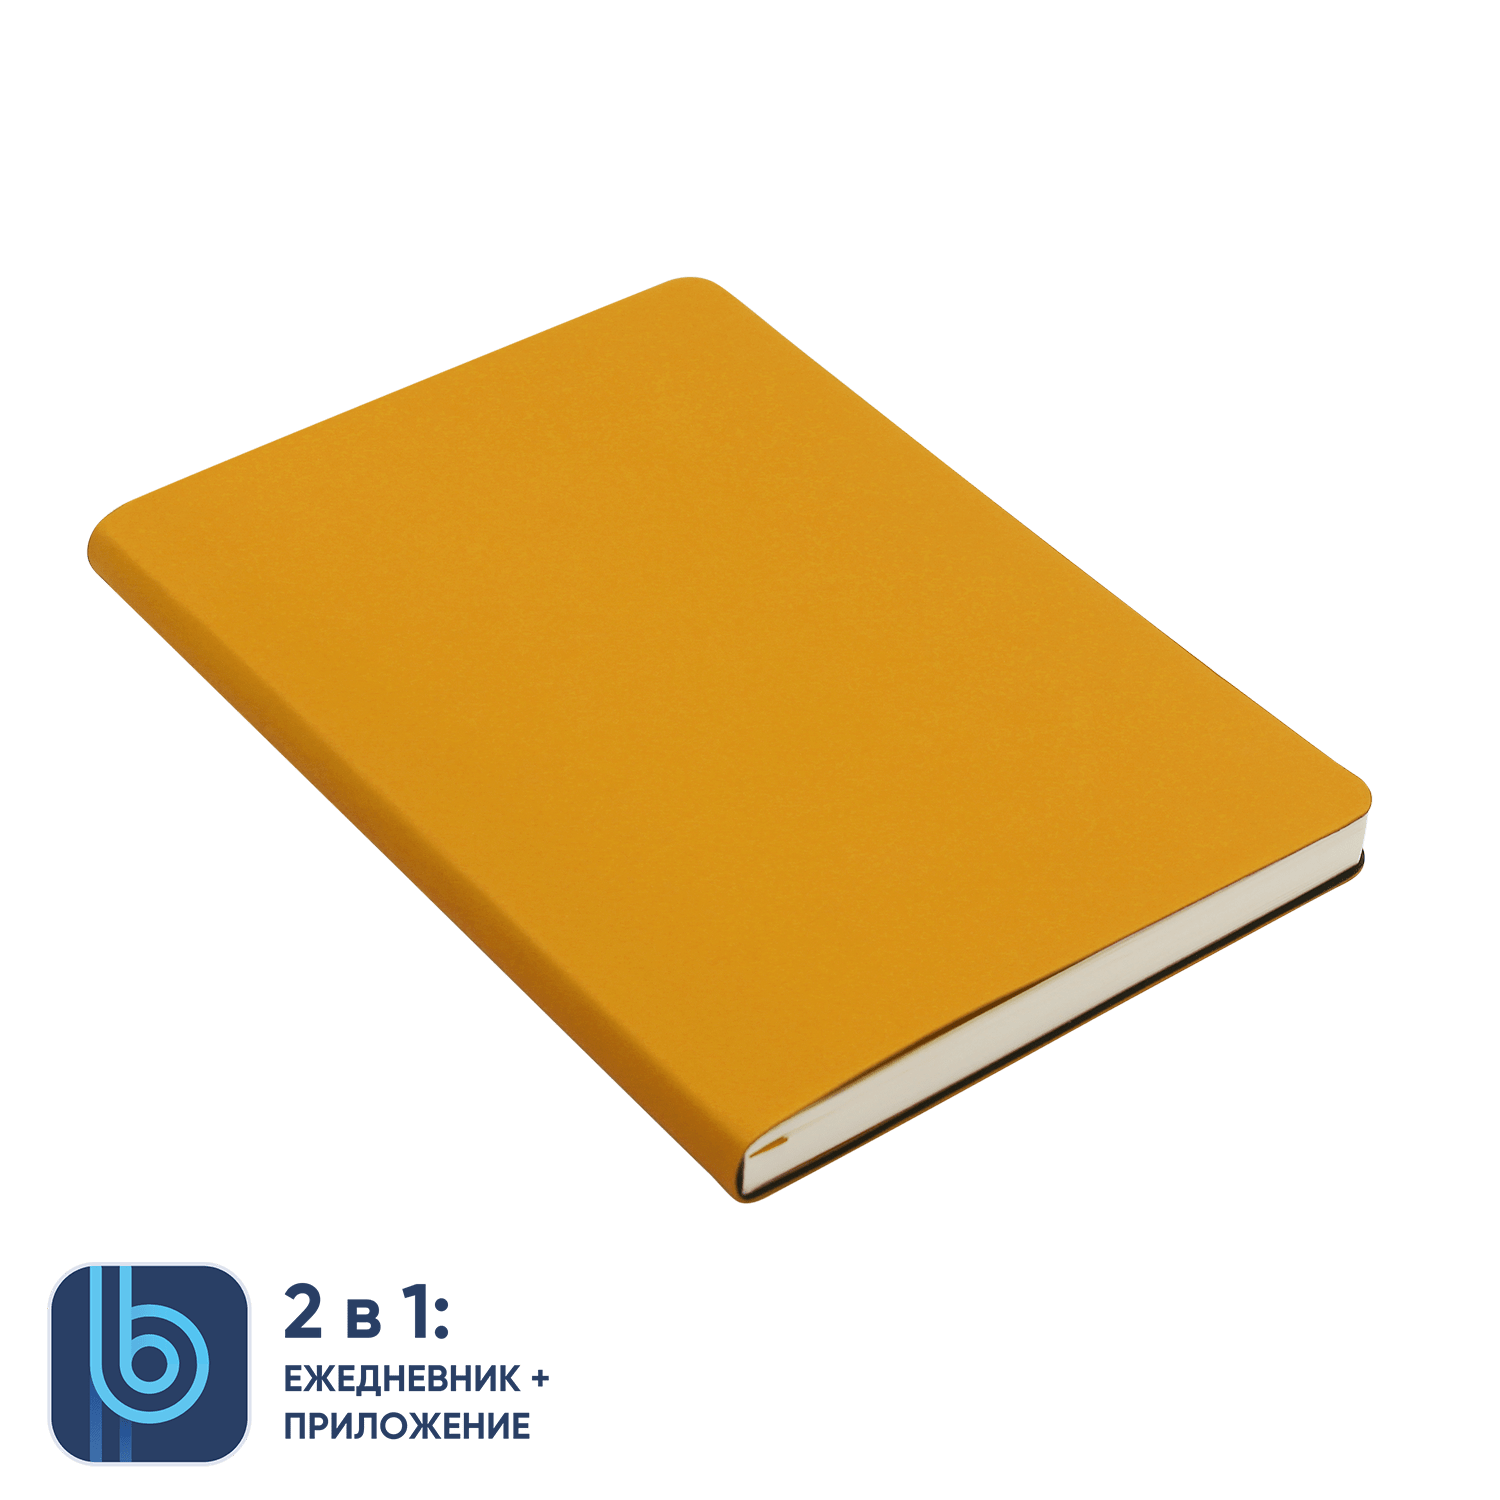 Ежедневник Bplanner.01 yellow (желтый)